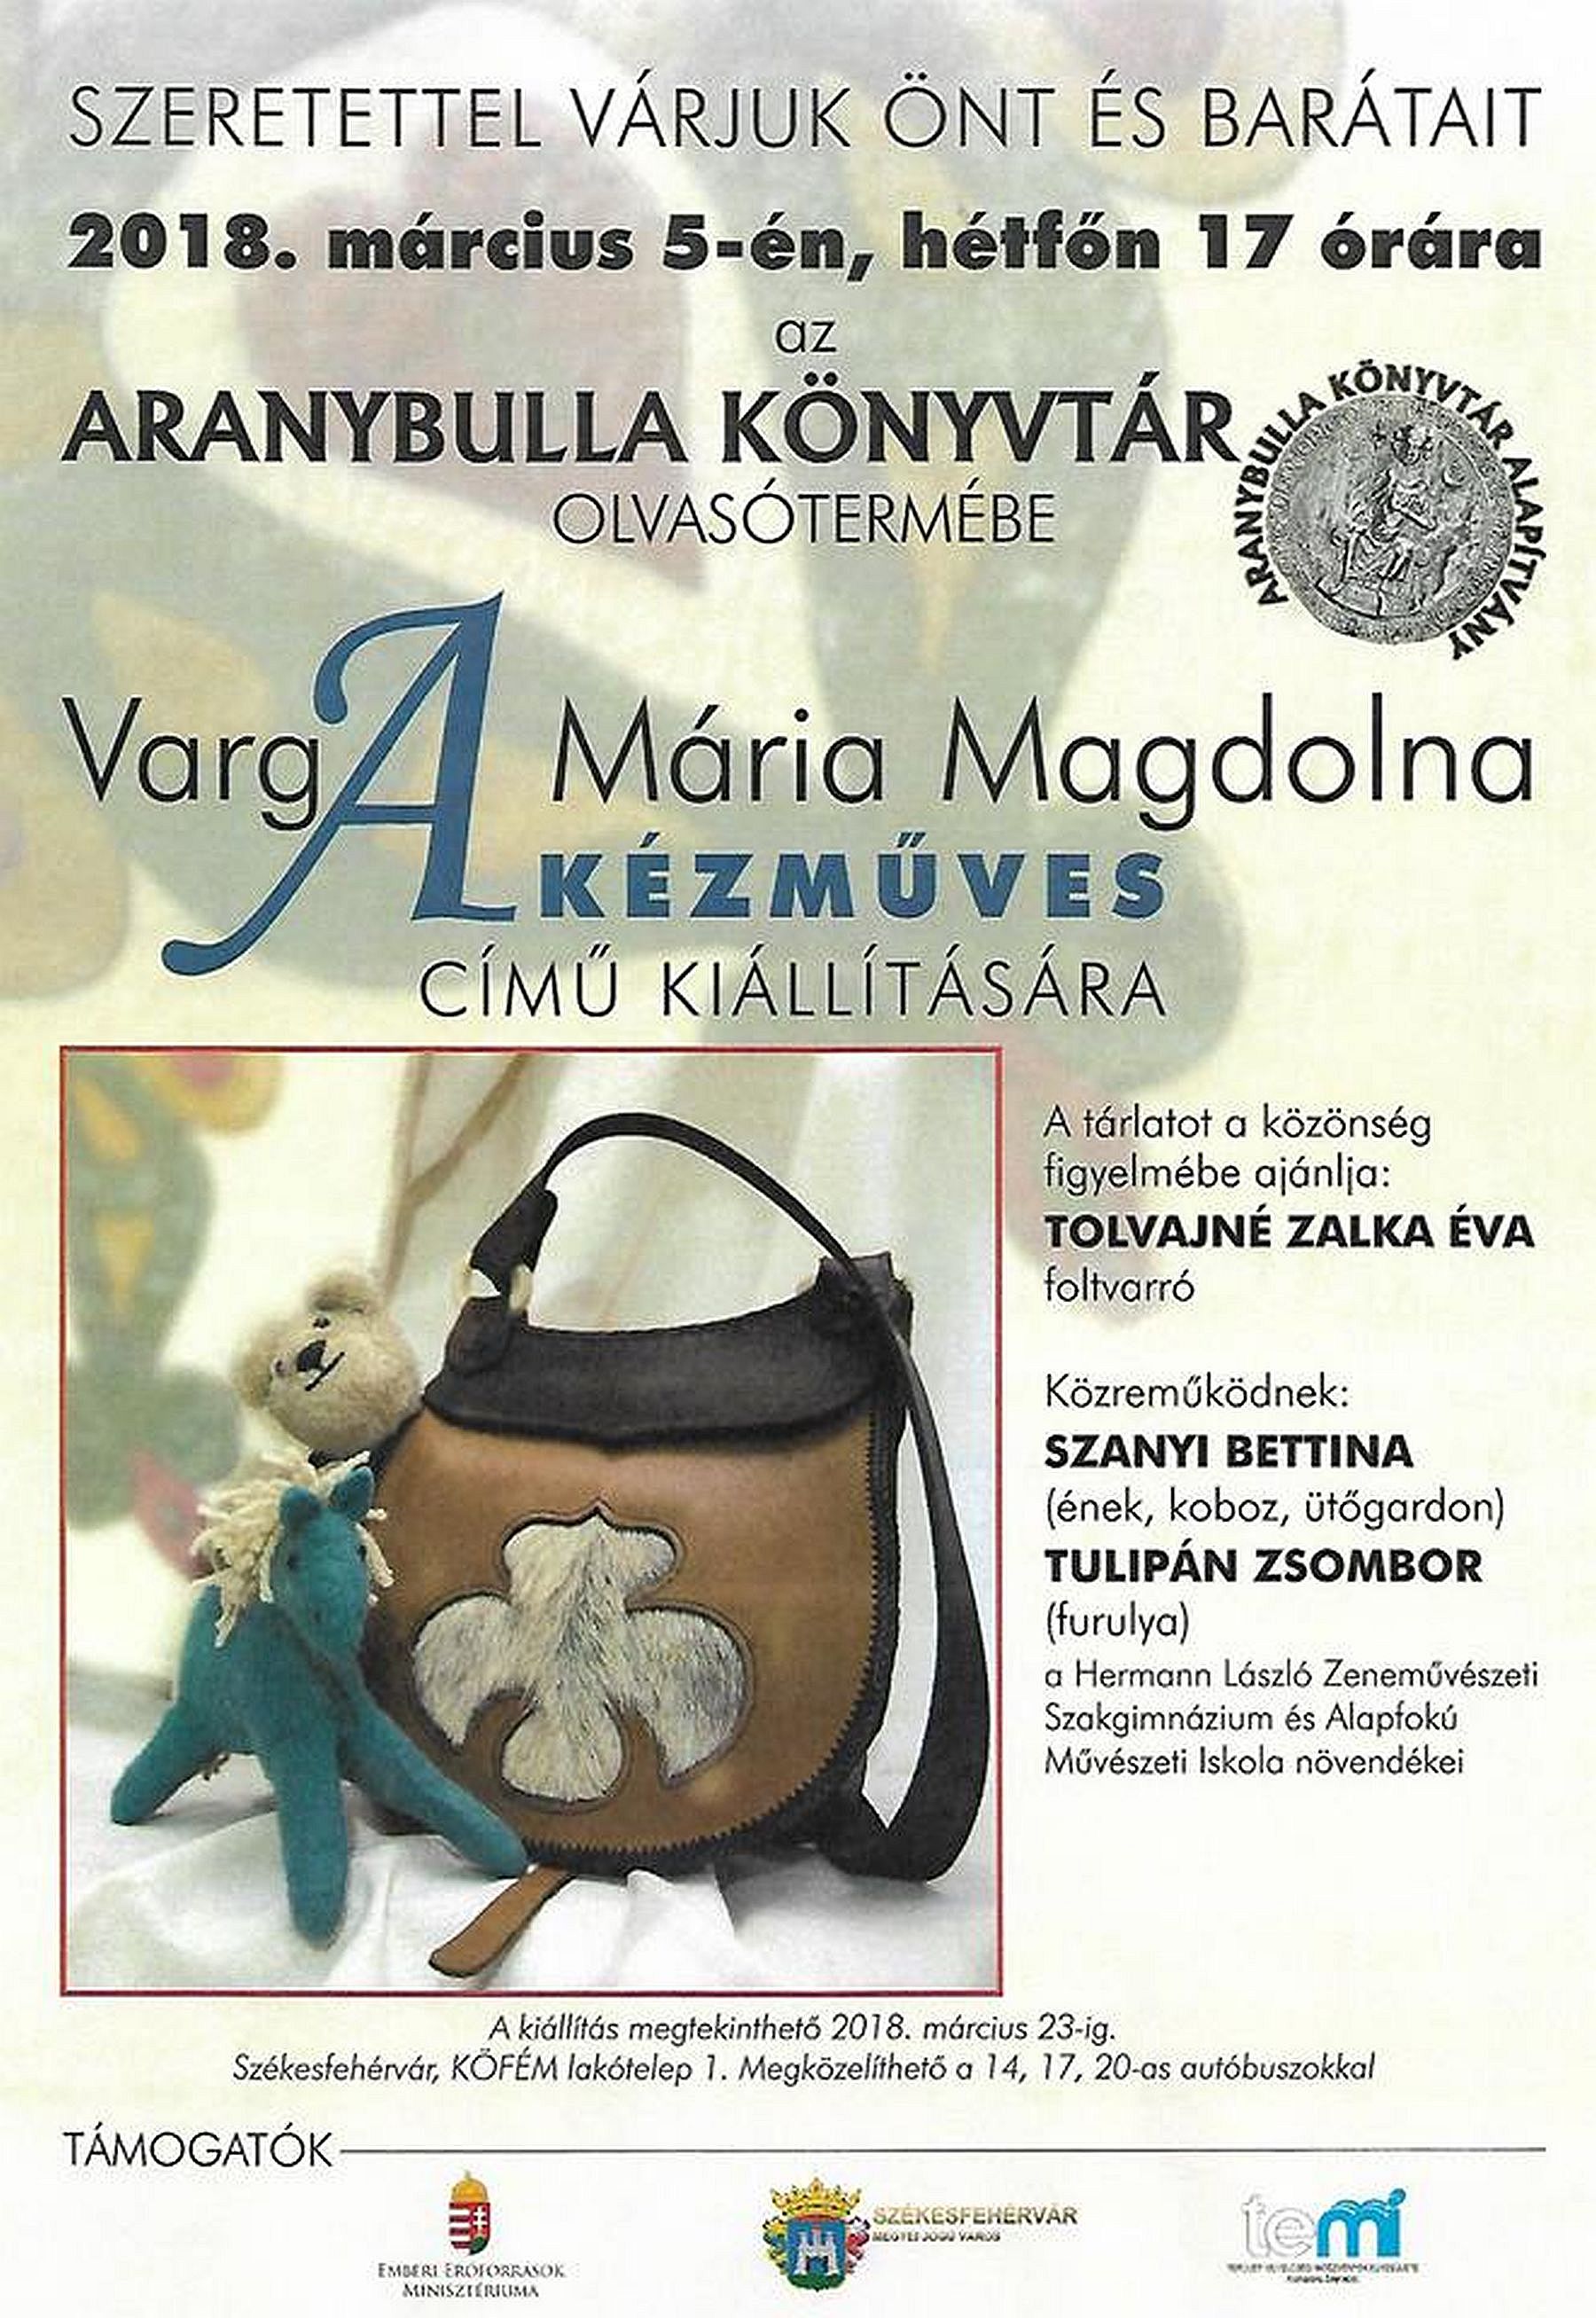 A kézműves - hétfőn lesz Varga Mária Magdolna kiállításának megnyitója